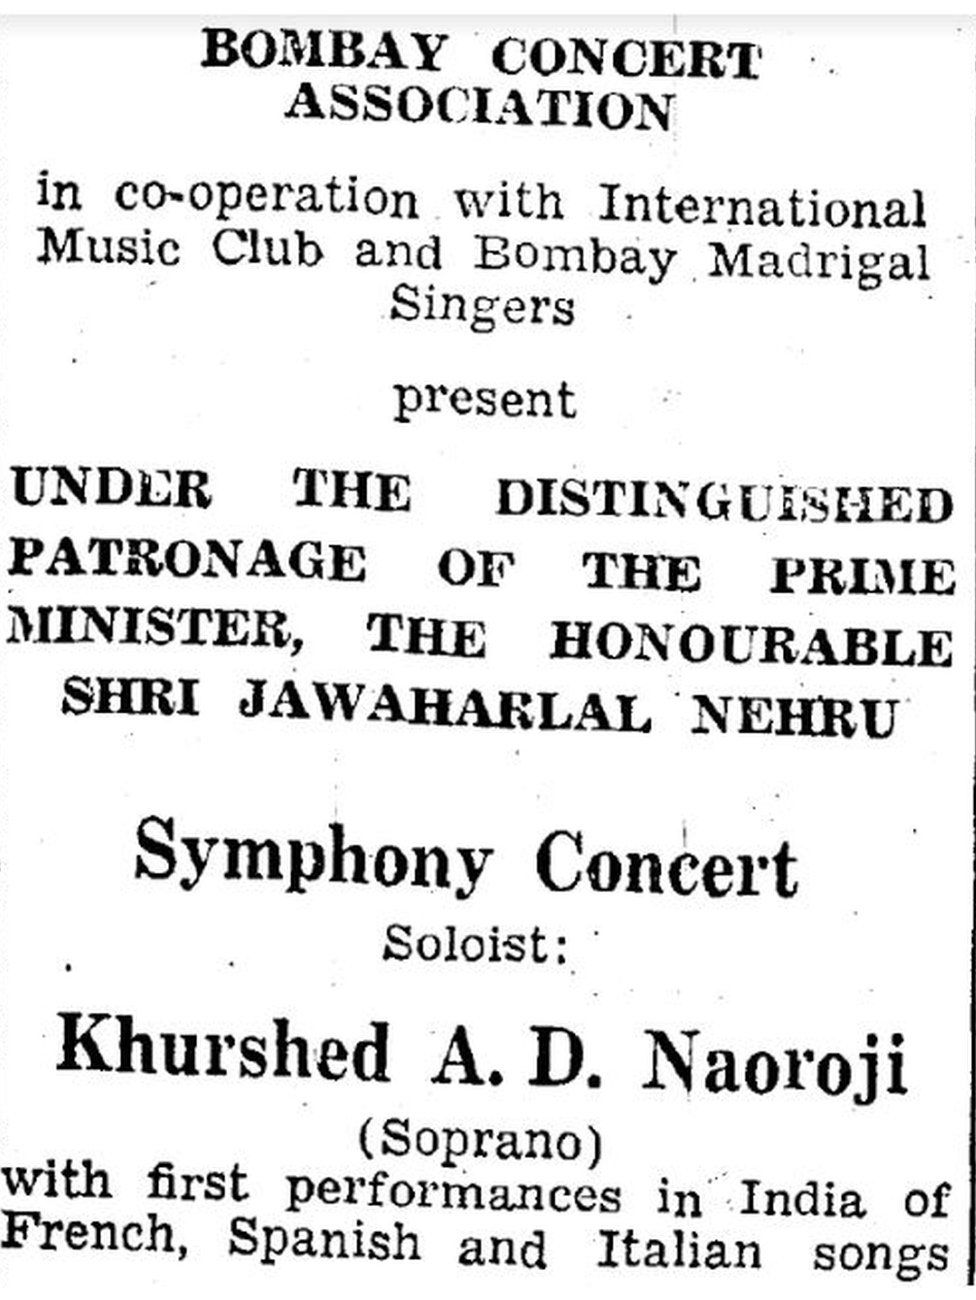 Реклама концерта "Хуршедбен". Один из немногих сохранившихся источников, документирующих жизнь Хуршедбена после обретения Индией независимости. Здесь Неру посещает концерт в Бомбее, на котором Хуршедбен был солистом.